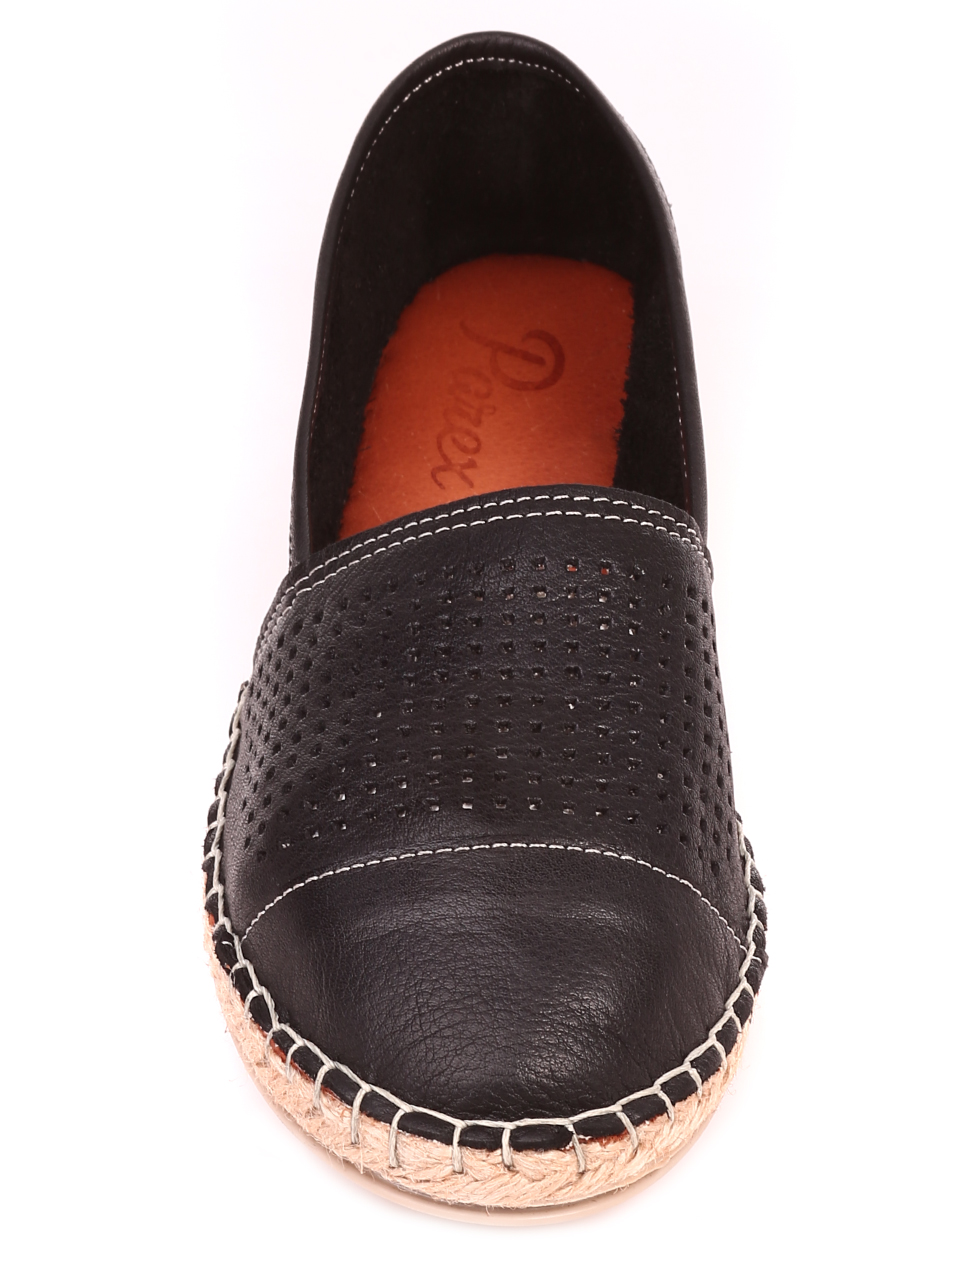 Дамски комфортни обувки от естествена кожа 1644 black